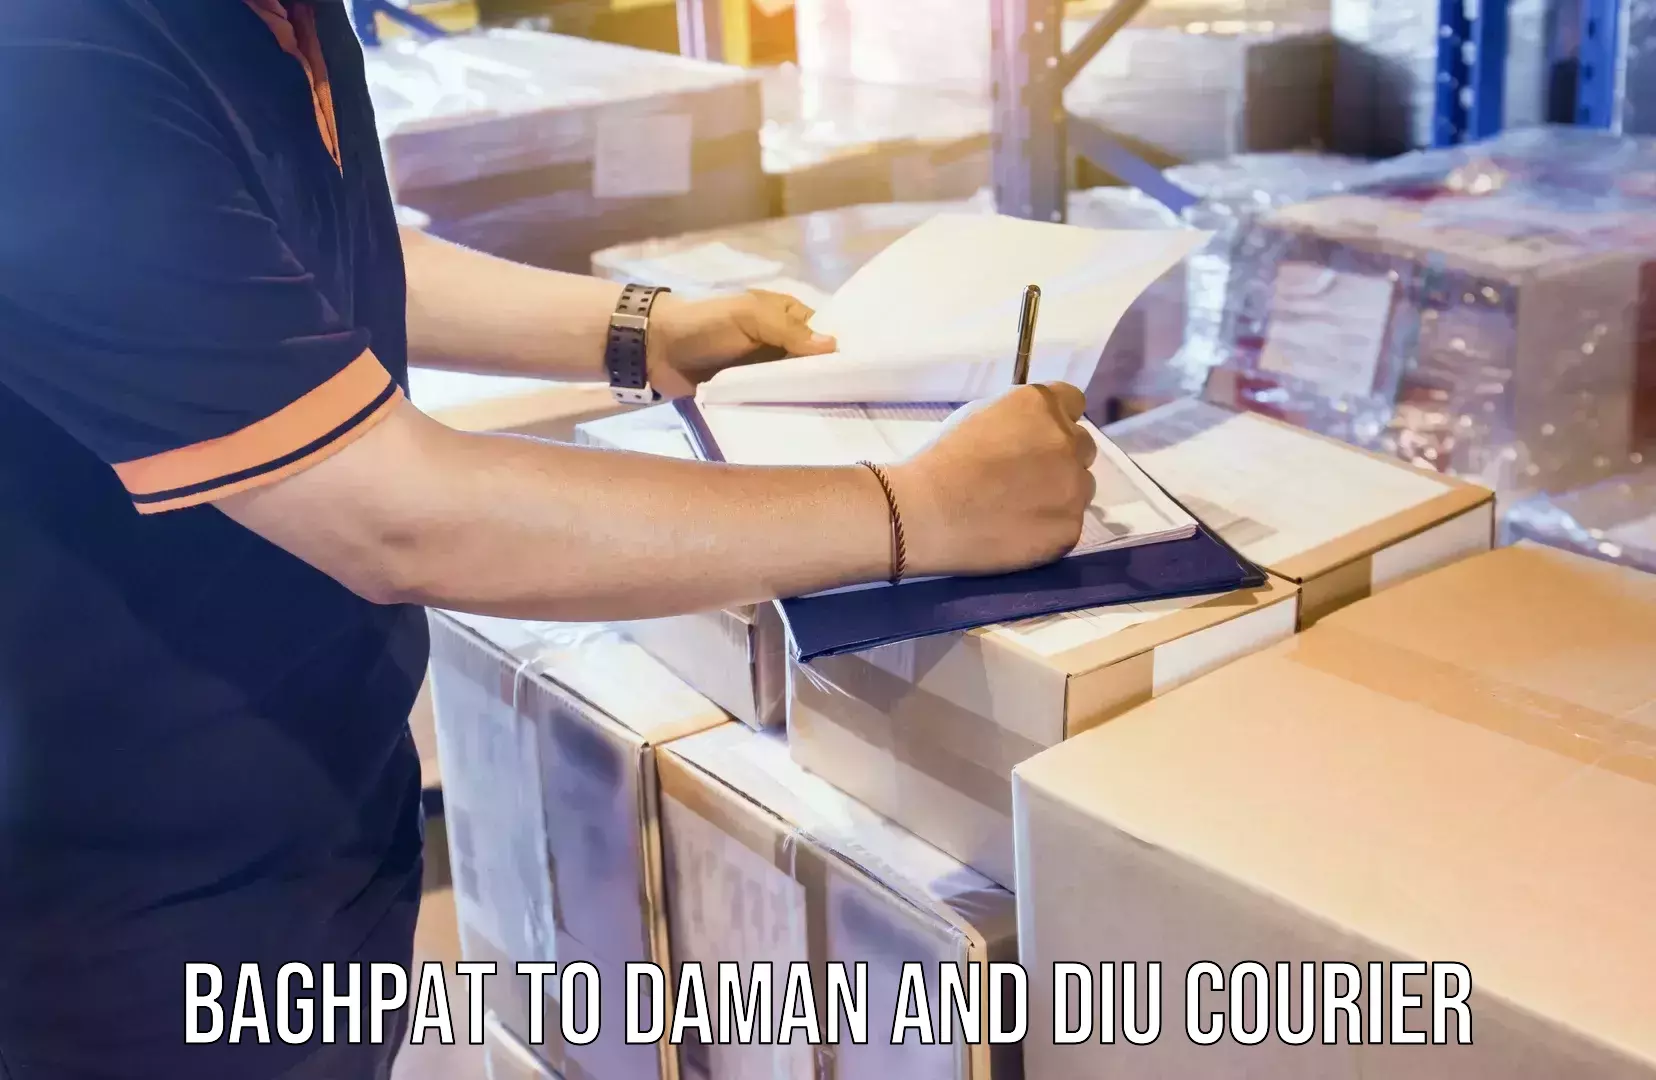 Urgent courier needs Baghpat to Daman and Diu